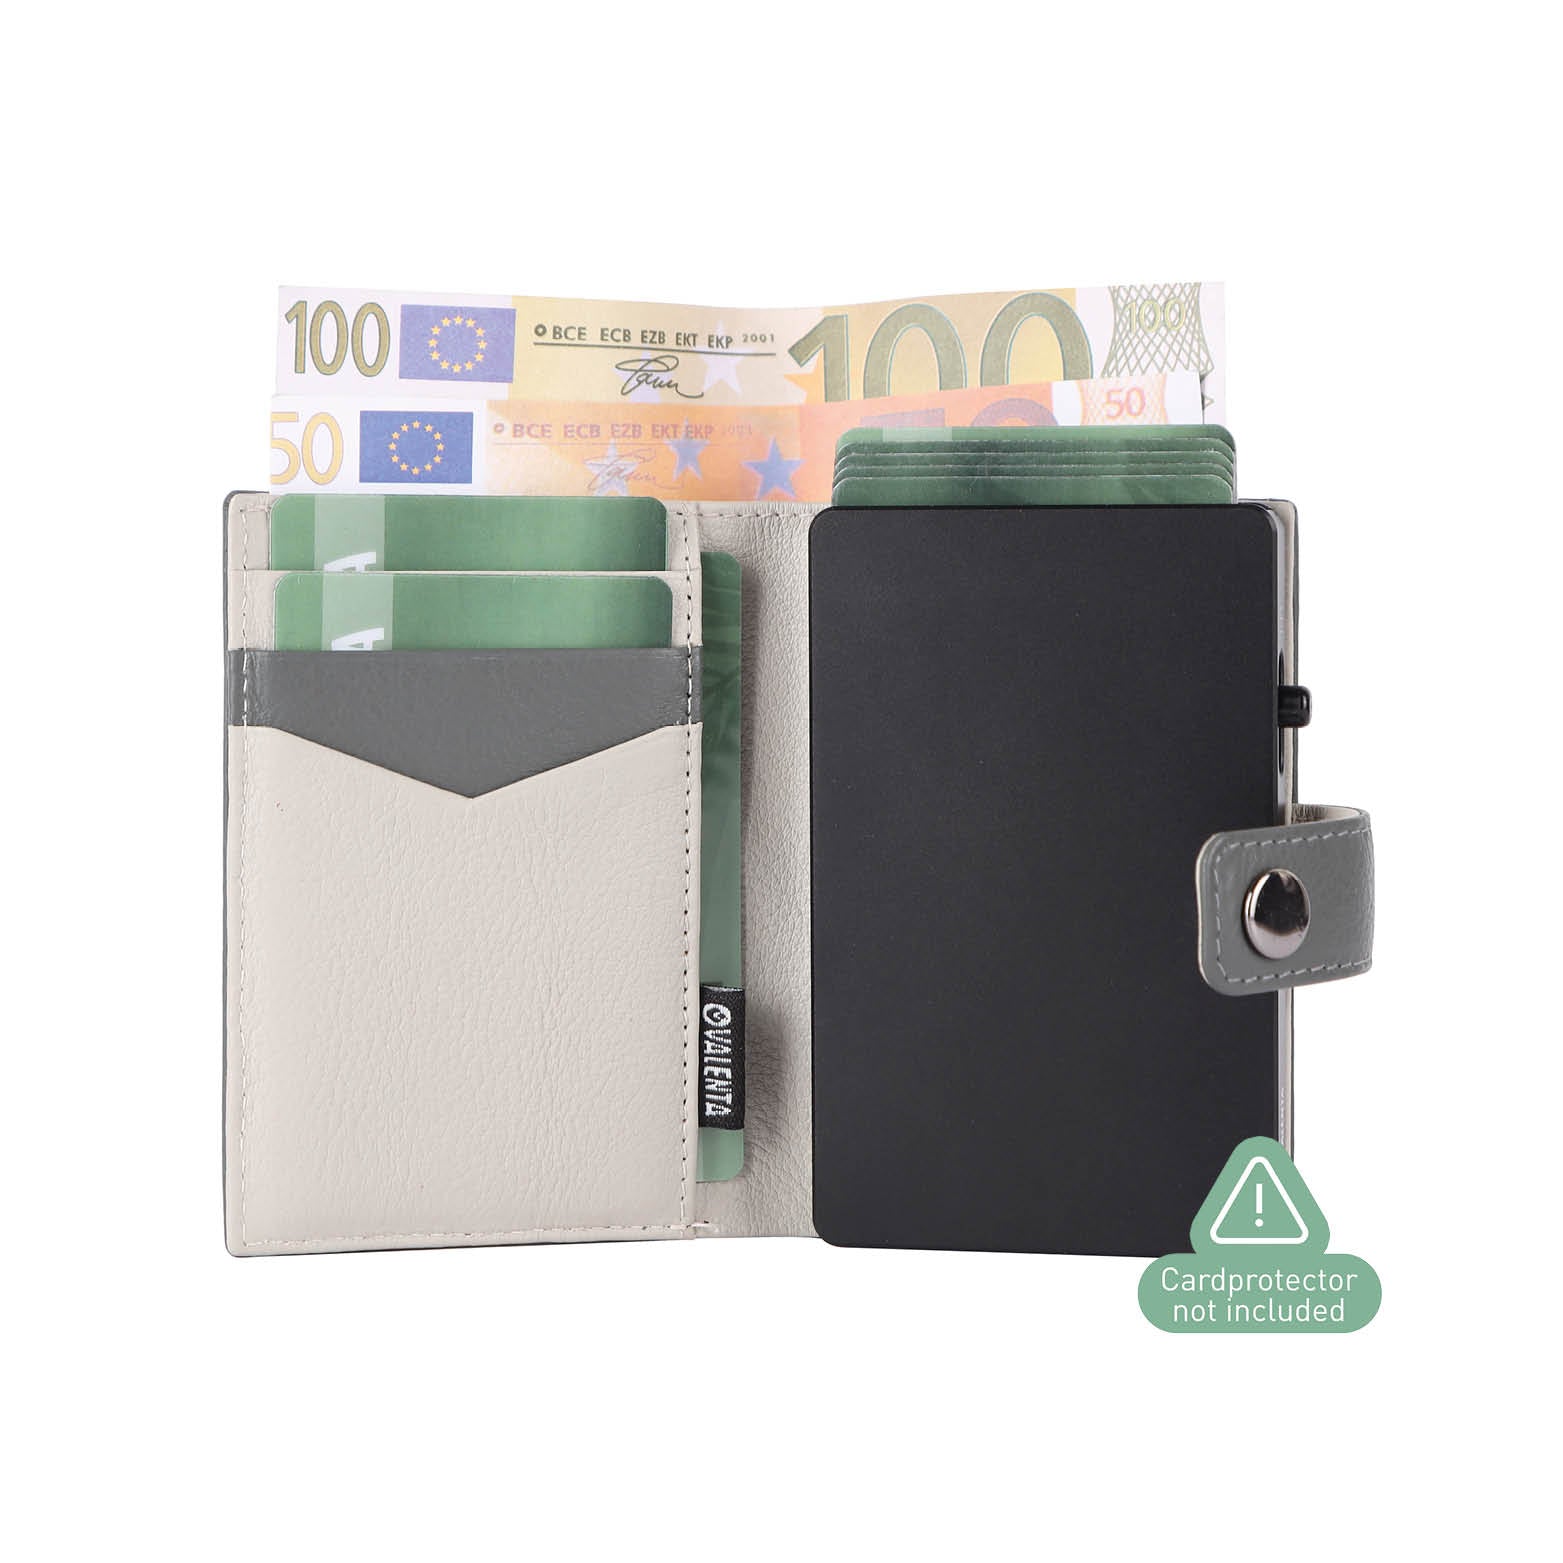 Grijze echt leren luxe portemonnee geschikt voor kaarten, contant geld en munten met MagSafe voor pasjeshouder Cardprotector Aluminium